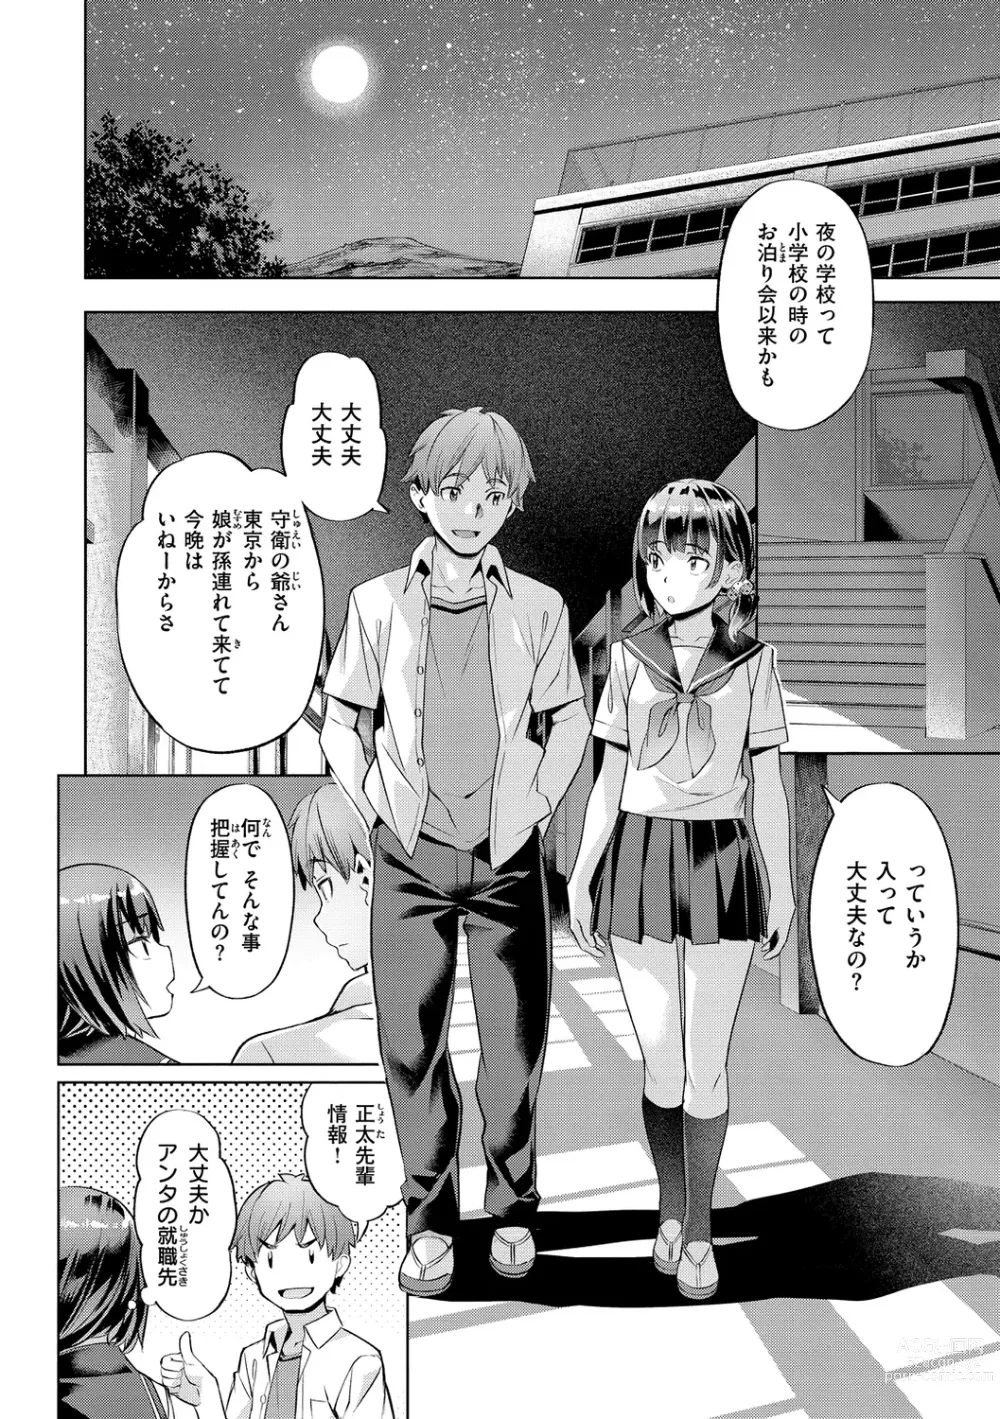 Page 8 of manga Binetsu Emotion - Sensual Emotion